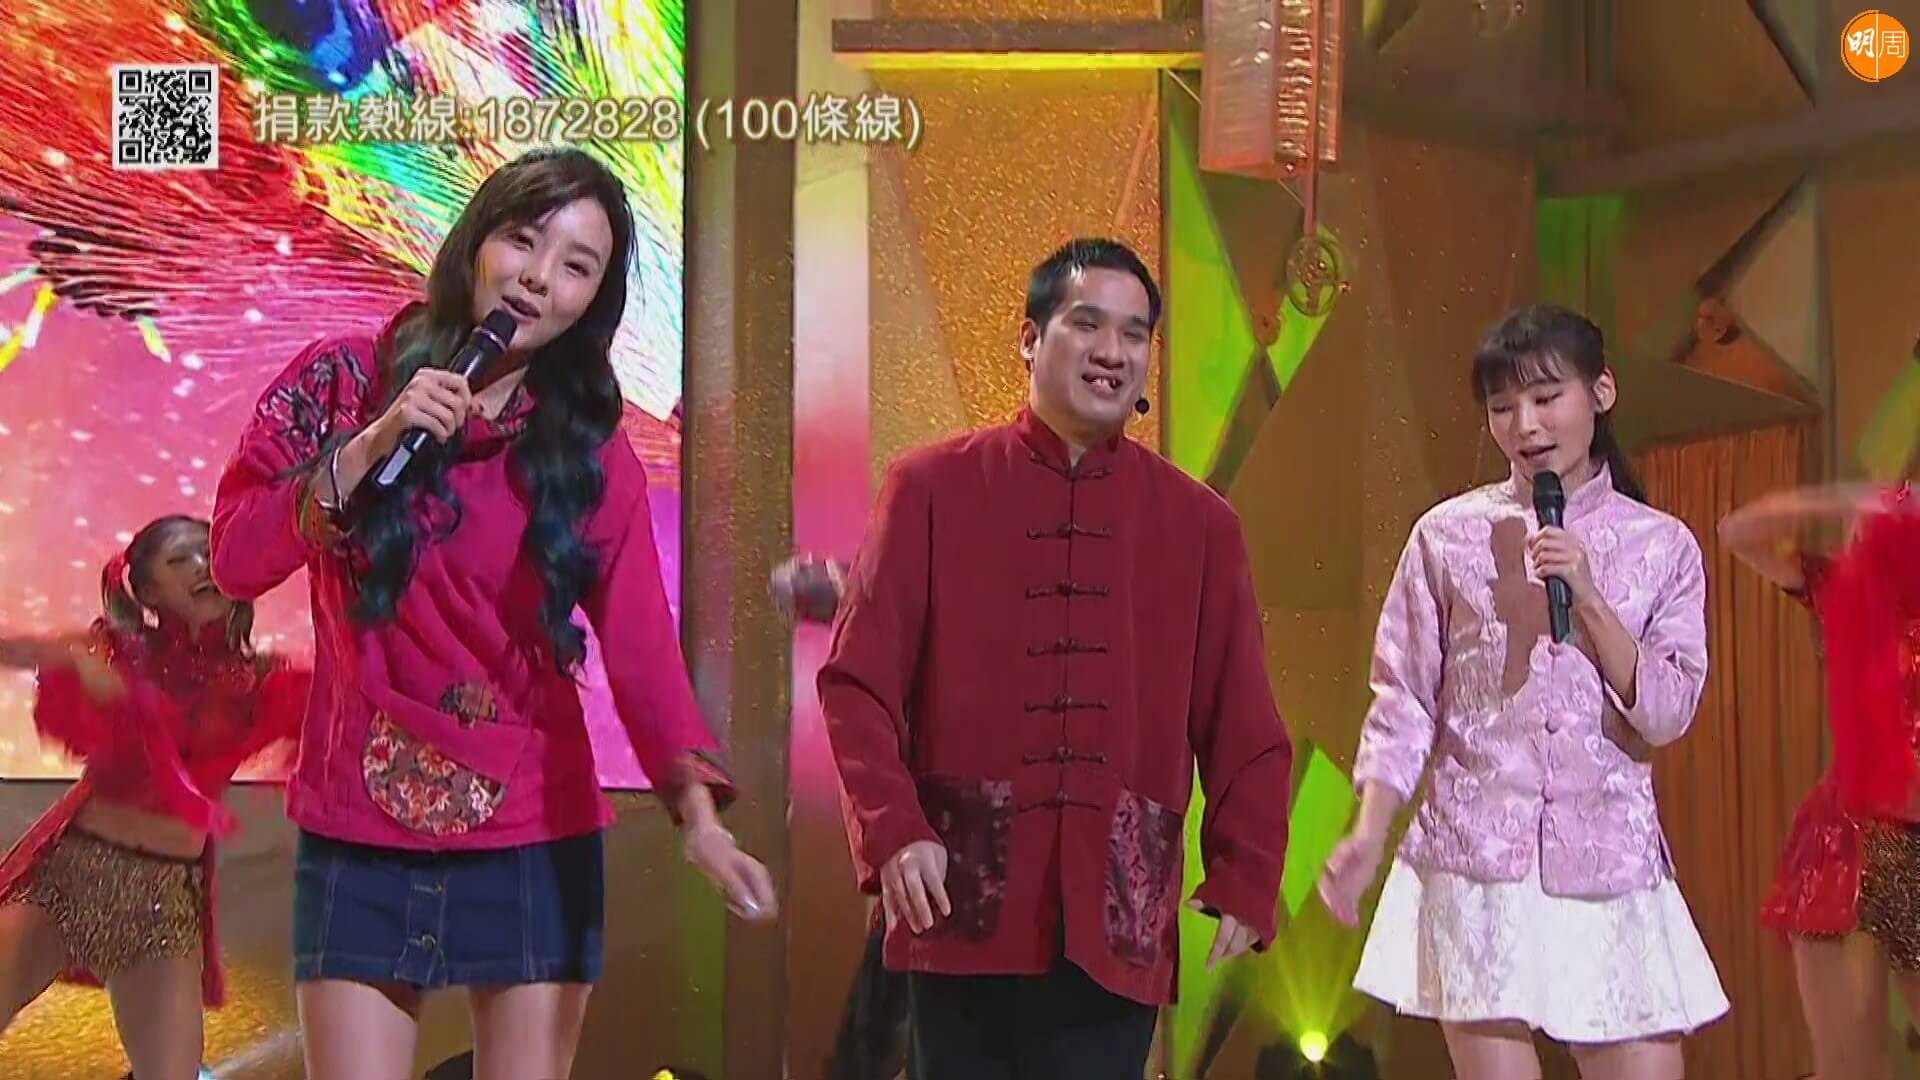 高嘉鴻曾與余思霆及簡淑兒在慈善節目中表演跳唱《皆大歡喜》